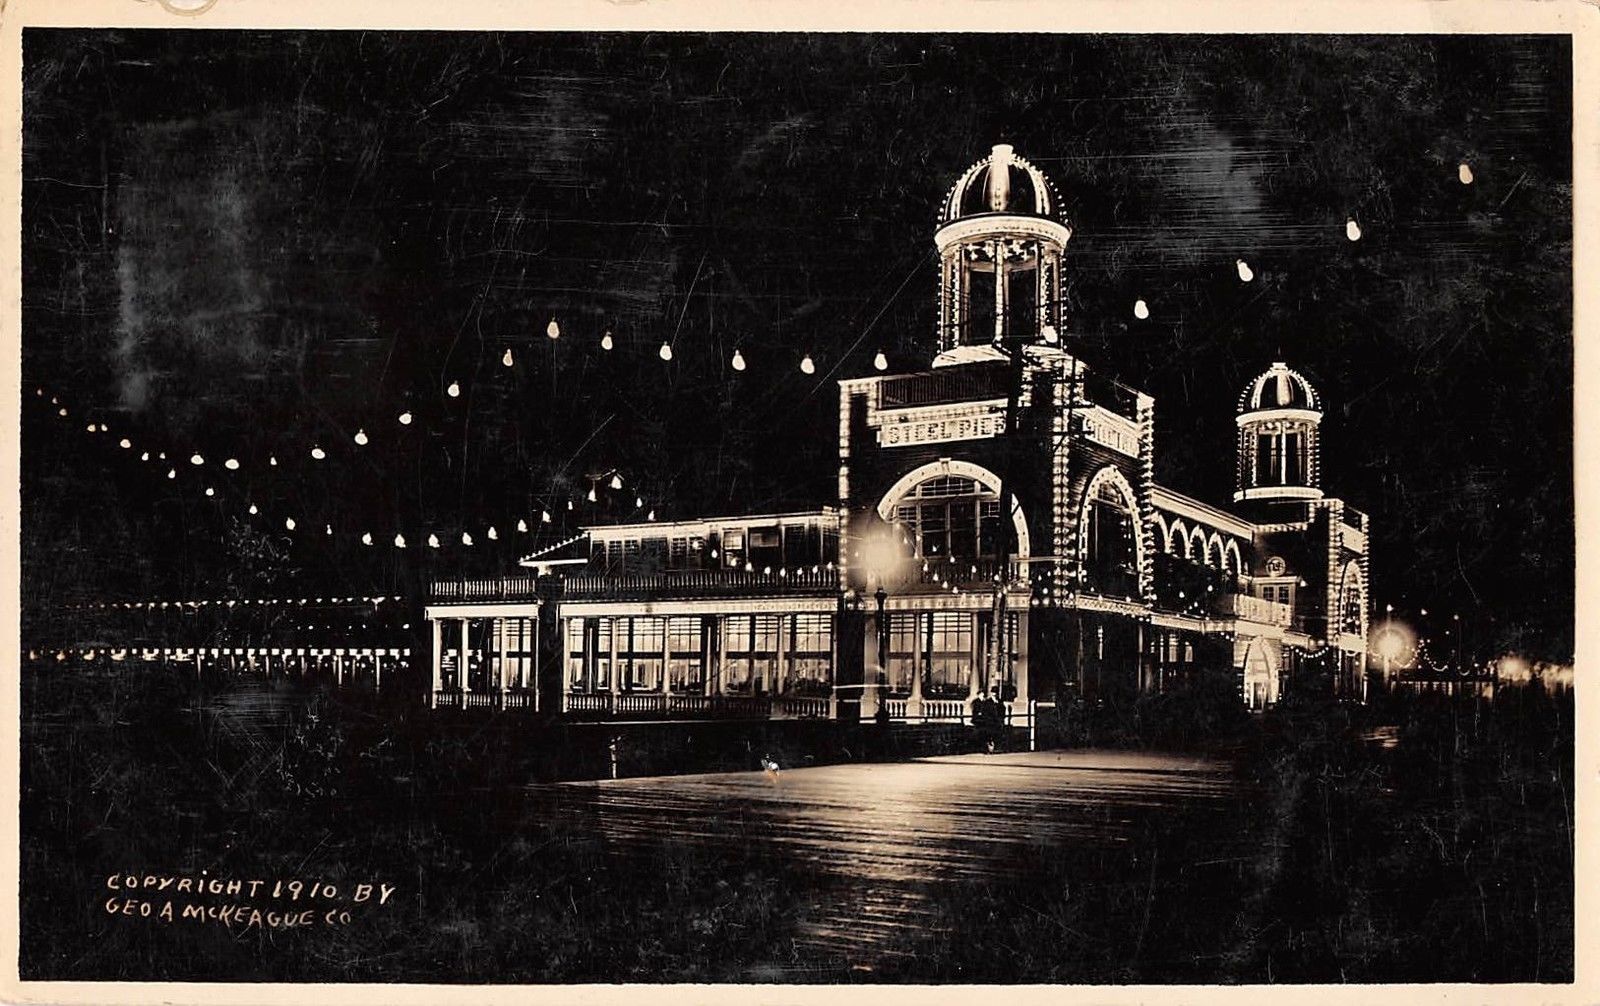 Atlantic City - Steel Pier at night - 1910